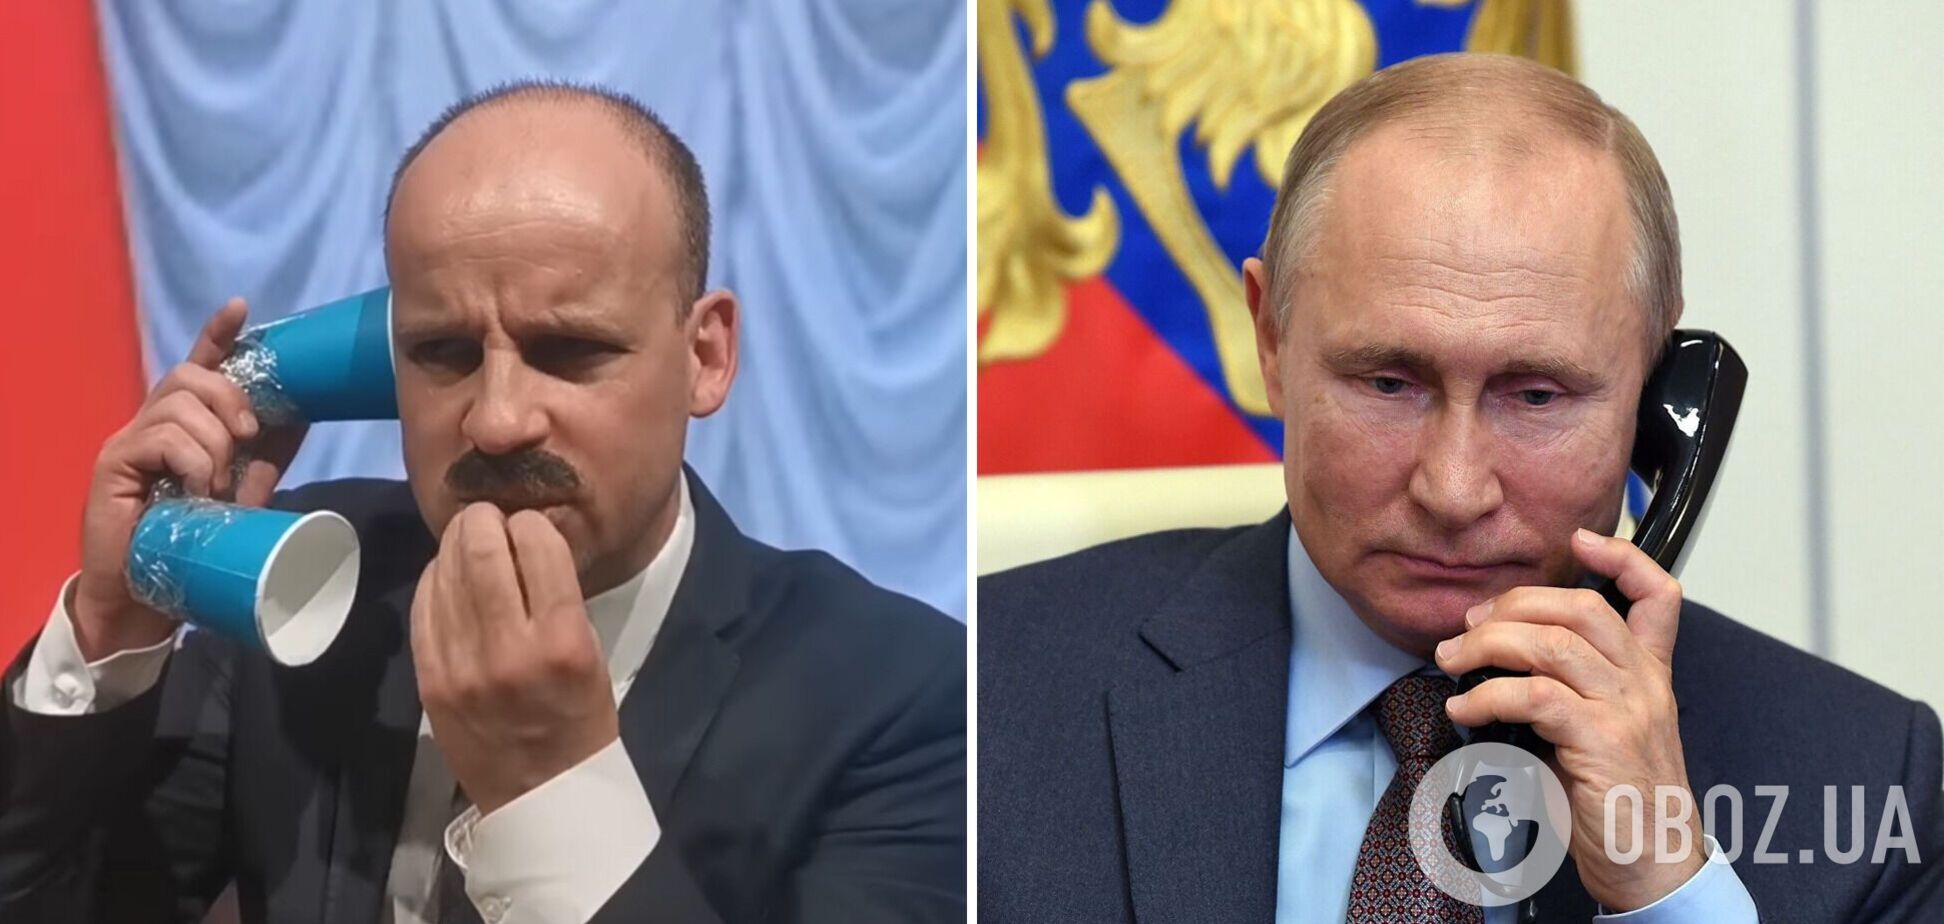 Как Путин уговаривал Лукашенко напасть на Украину: сеть взорвало пародийное видео